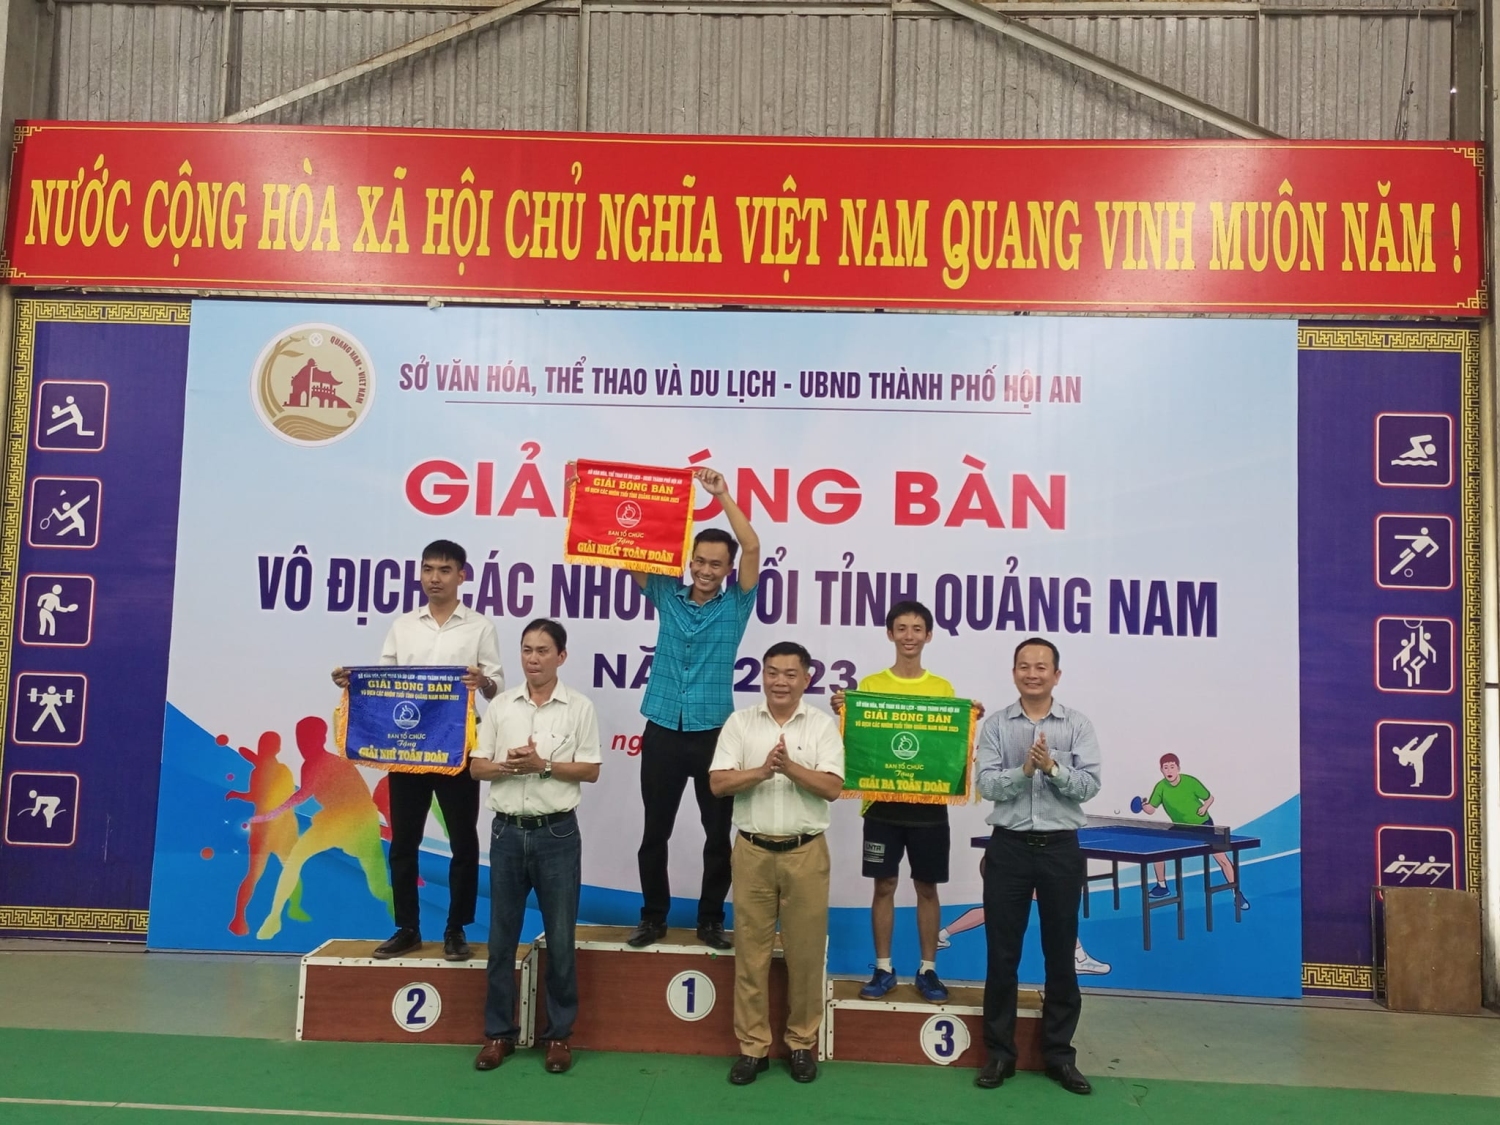 Giải bóng bàn vô địch các nhóm tuổi tỉnh Quảng Nam năm 2023.